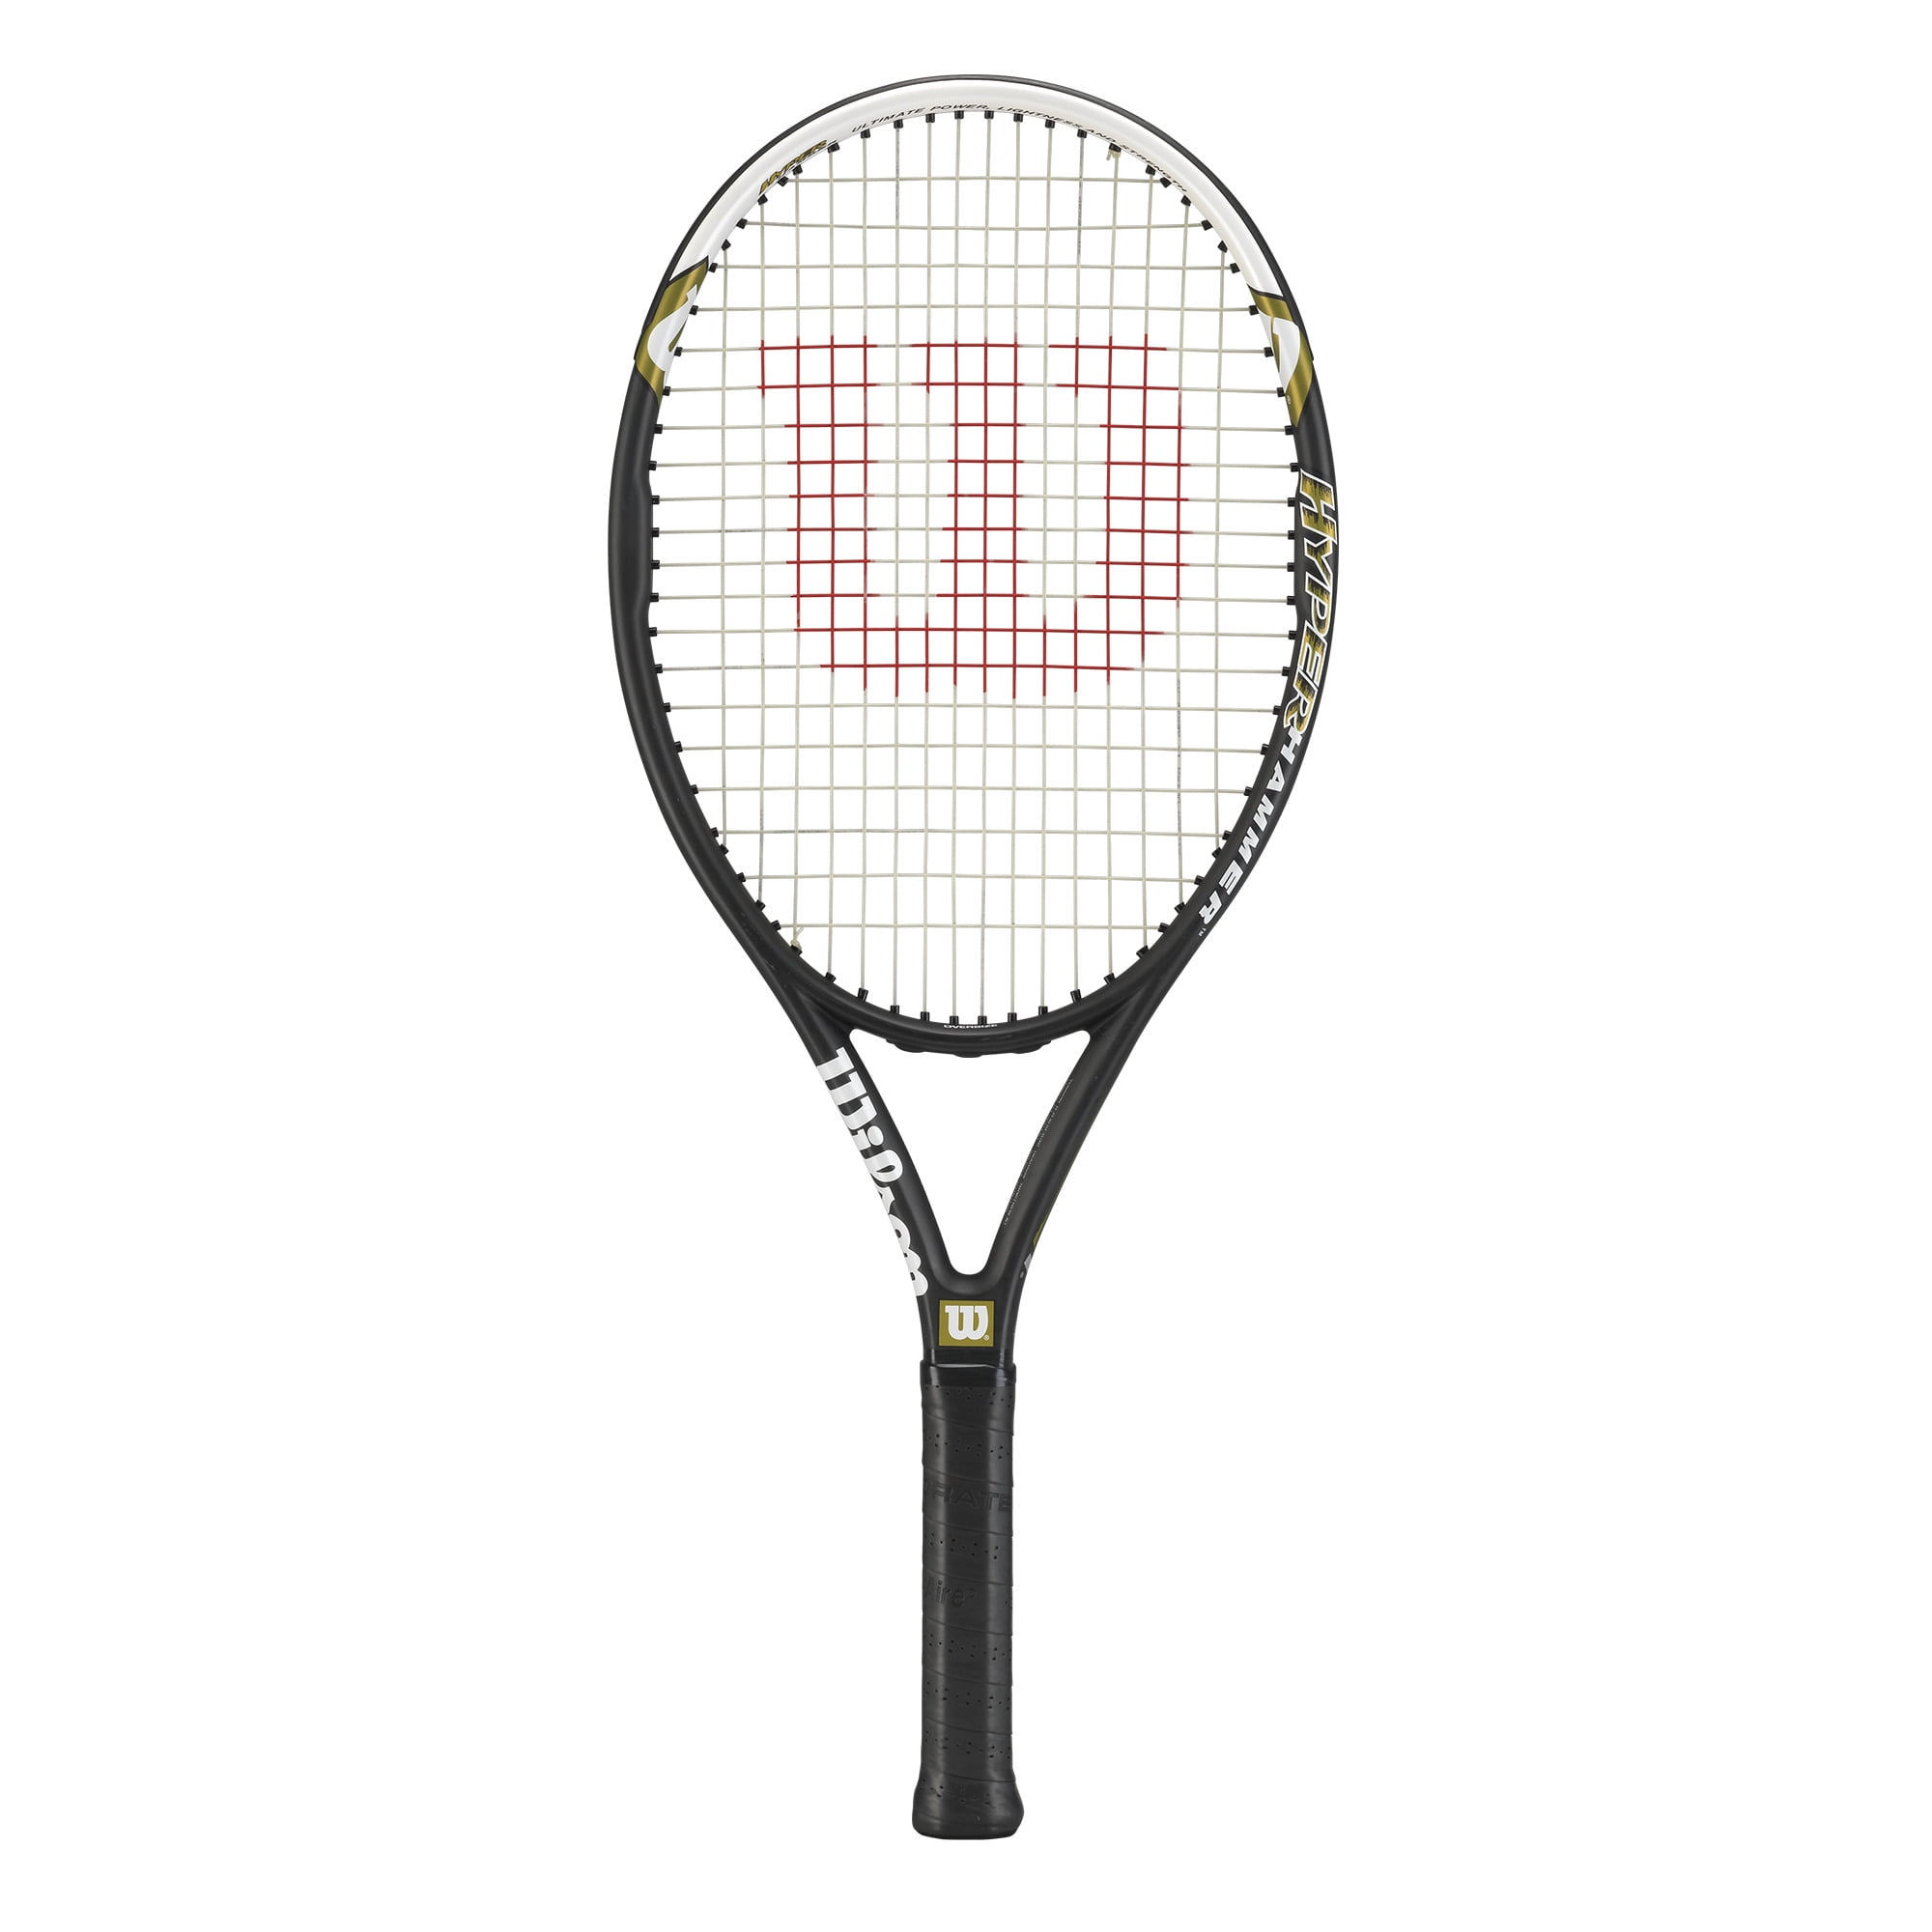 Strung with Cover New Wilson Hammer 5.3 Oversize Tennis Racquet 4-3/8 Grip 